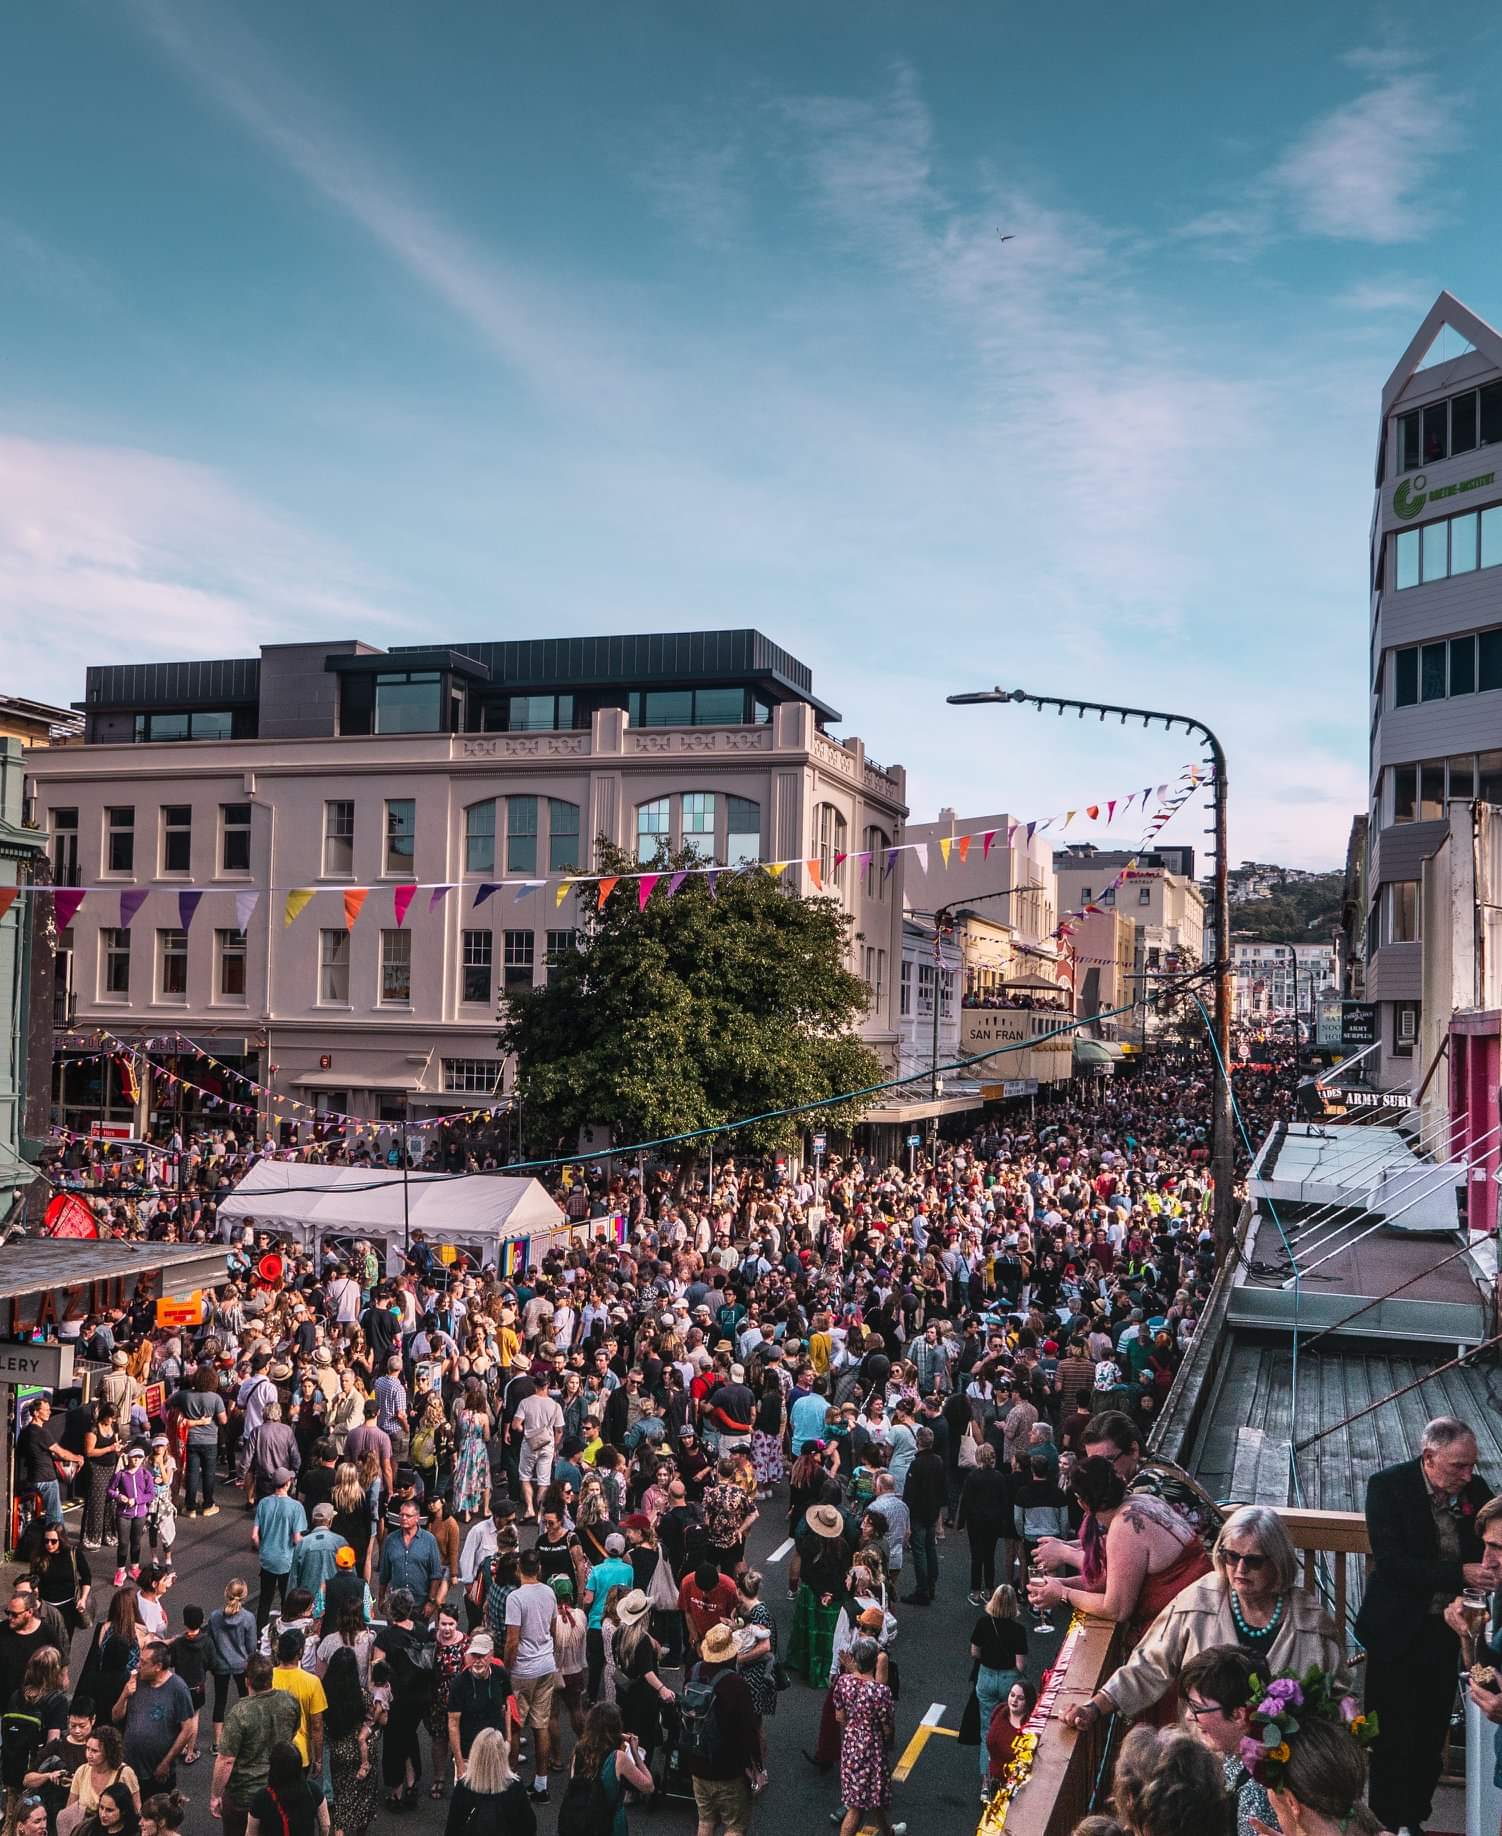 festival cubadupa na nova zelândia